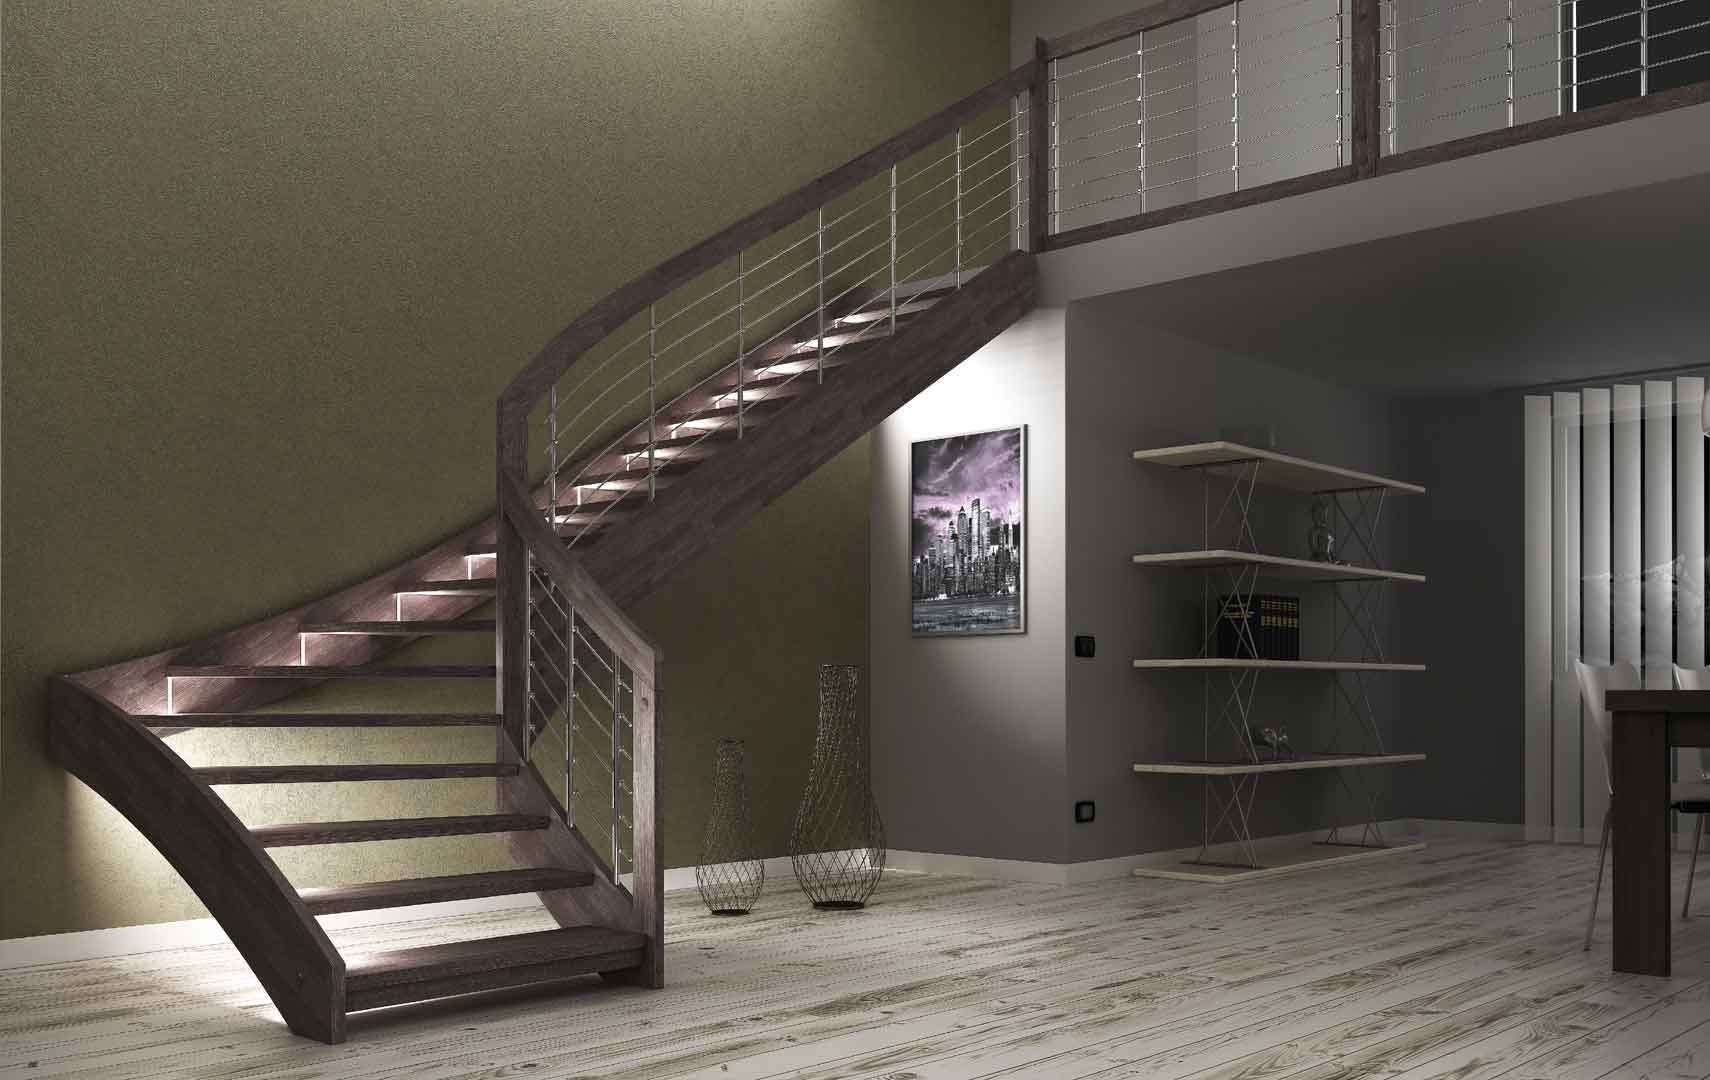 ᐅ Esperia chrome LED - Esperia_chrome_LED  escalier, rampe escalier, monte  escalier, escalier quart tournant, escalier bois, rambarde escalier, calcul  escalier, garde corps escalier, main courante escalier, escalier mode  Escalier moderne avec